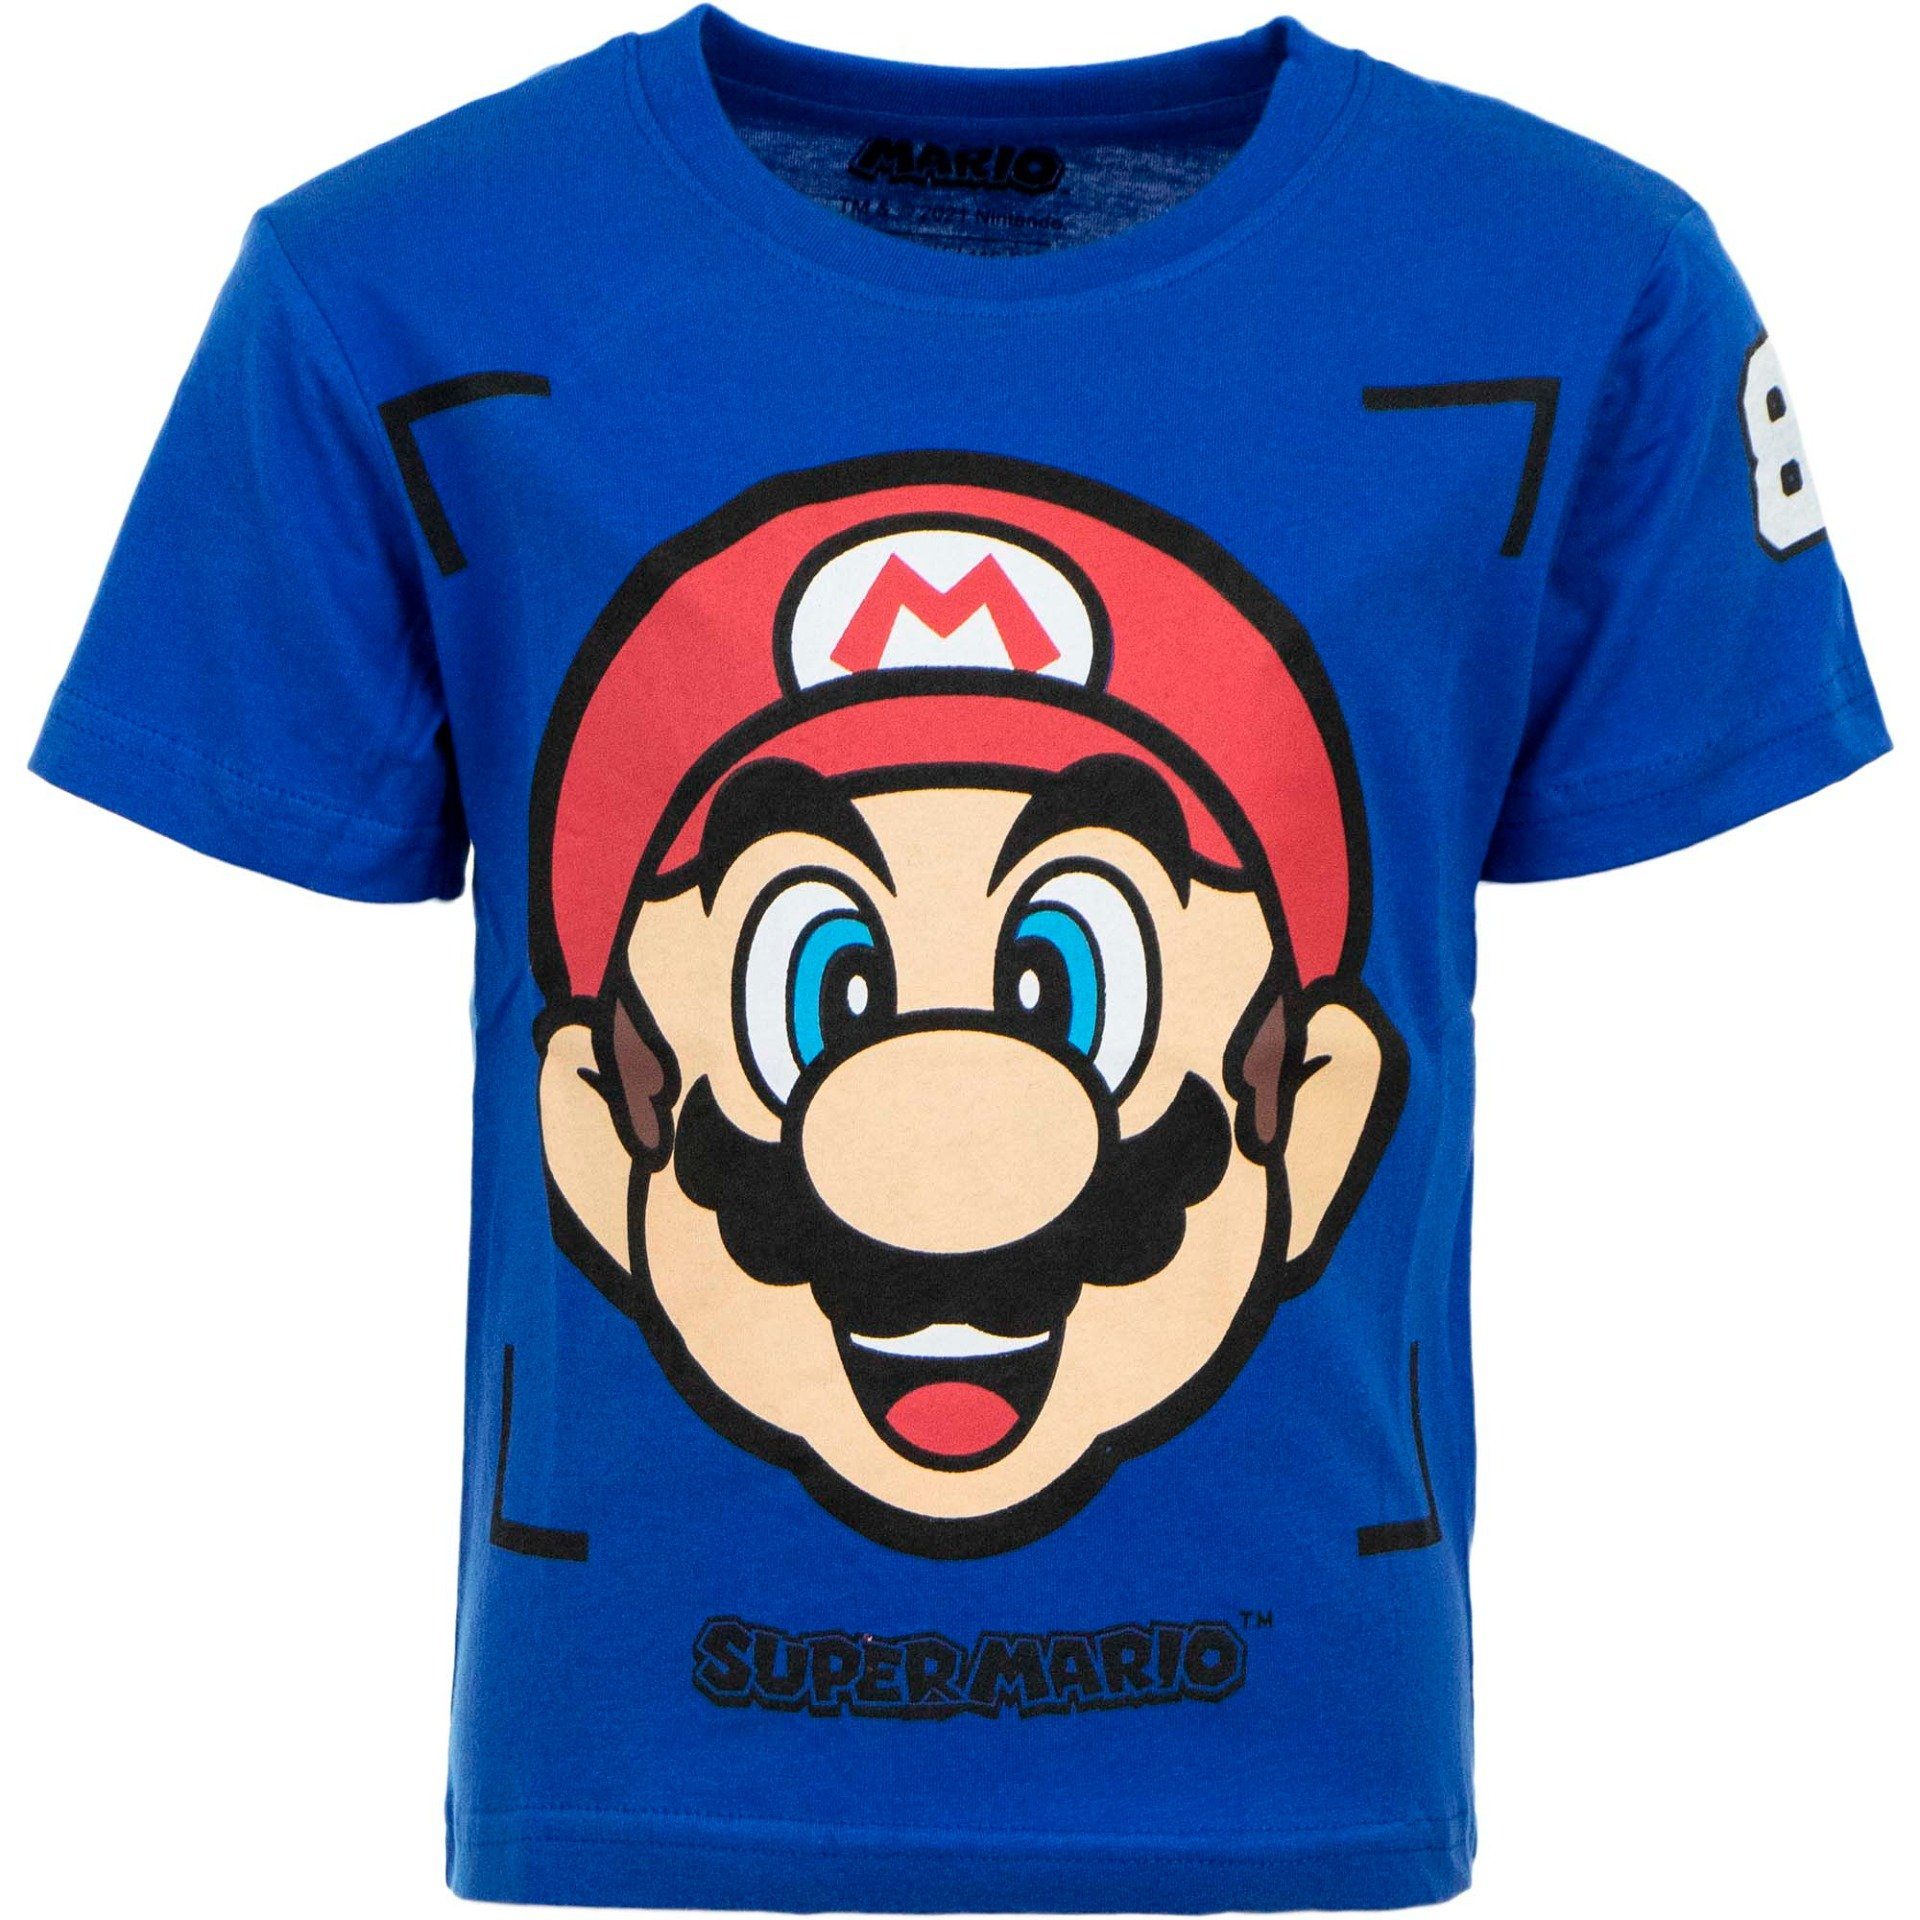 Super Mario T-Shirt »Mario Jungen kurzarm Shirt« Gr. 98 bis 128, 100%  Baumwolle, Blau online kaufen | OTTO